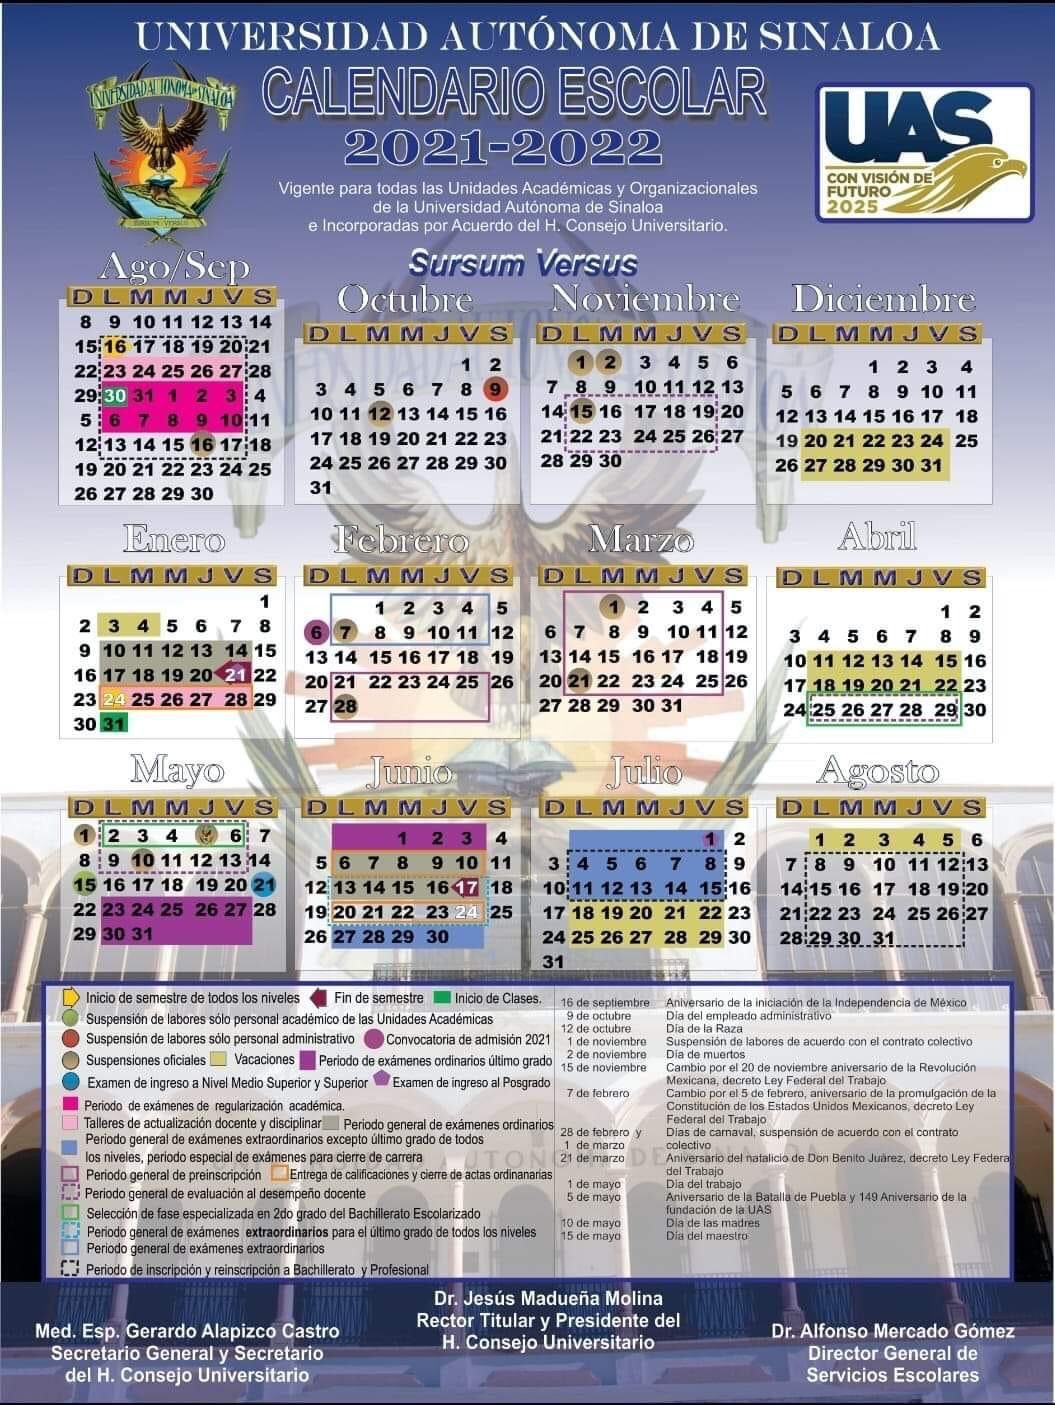 Calendario Escolar UAS 2021-2022